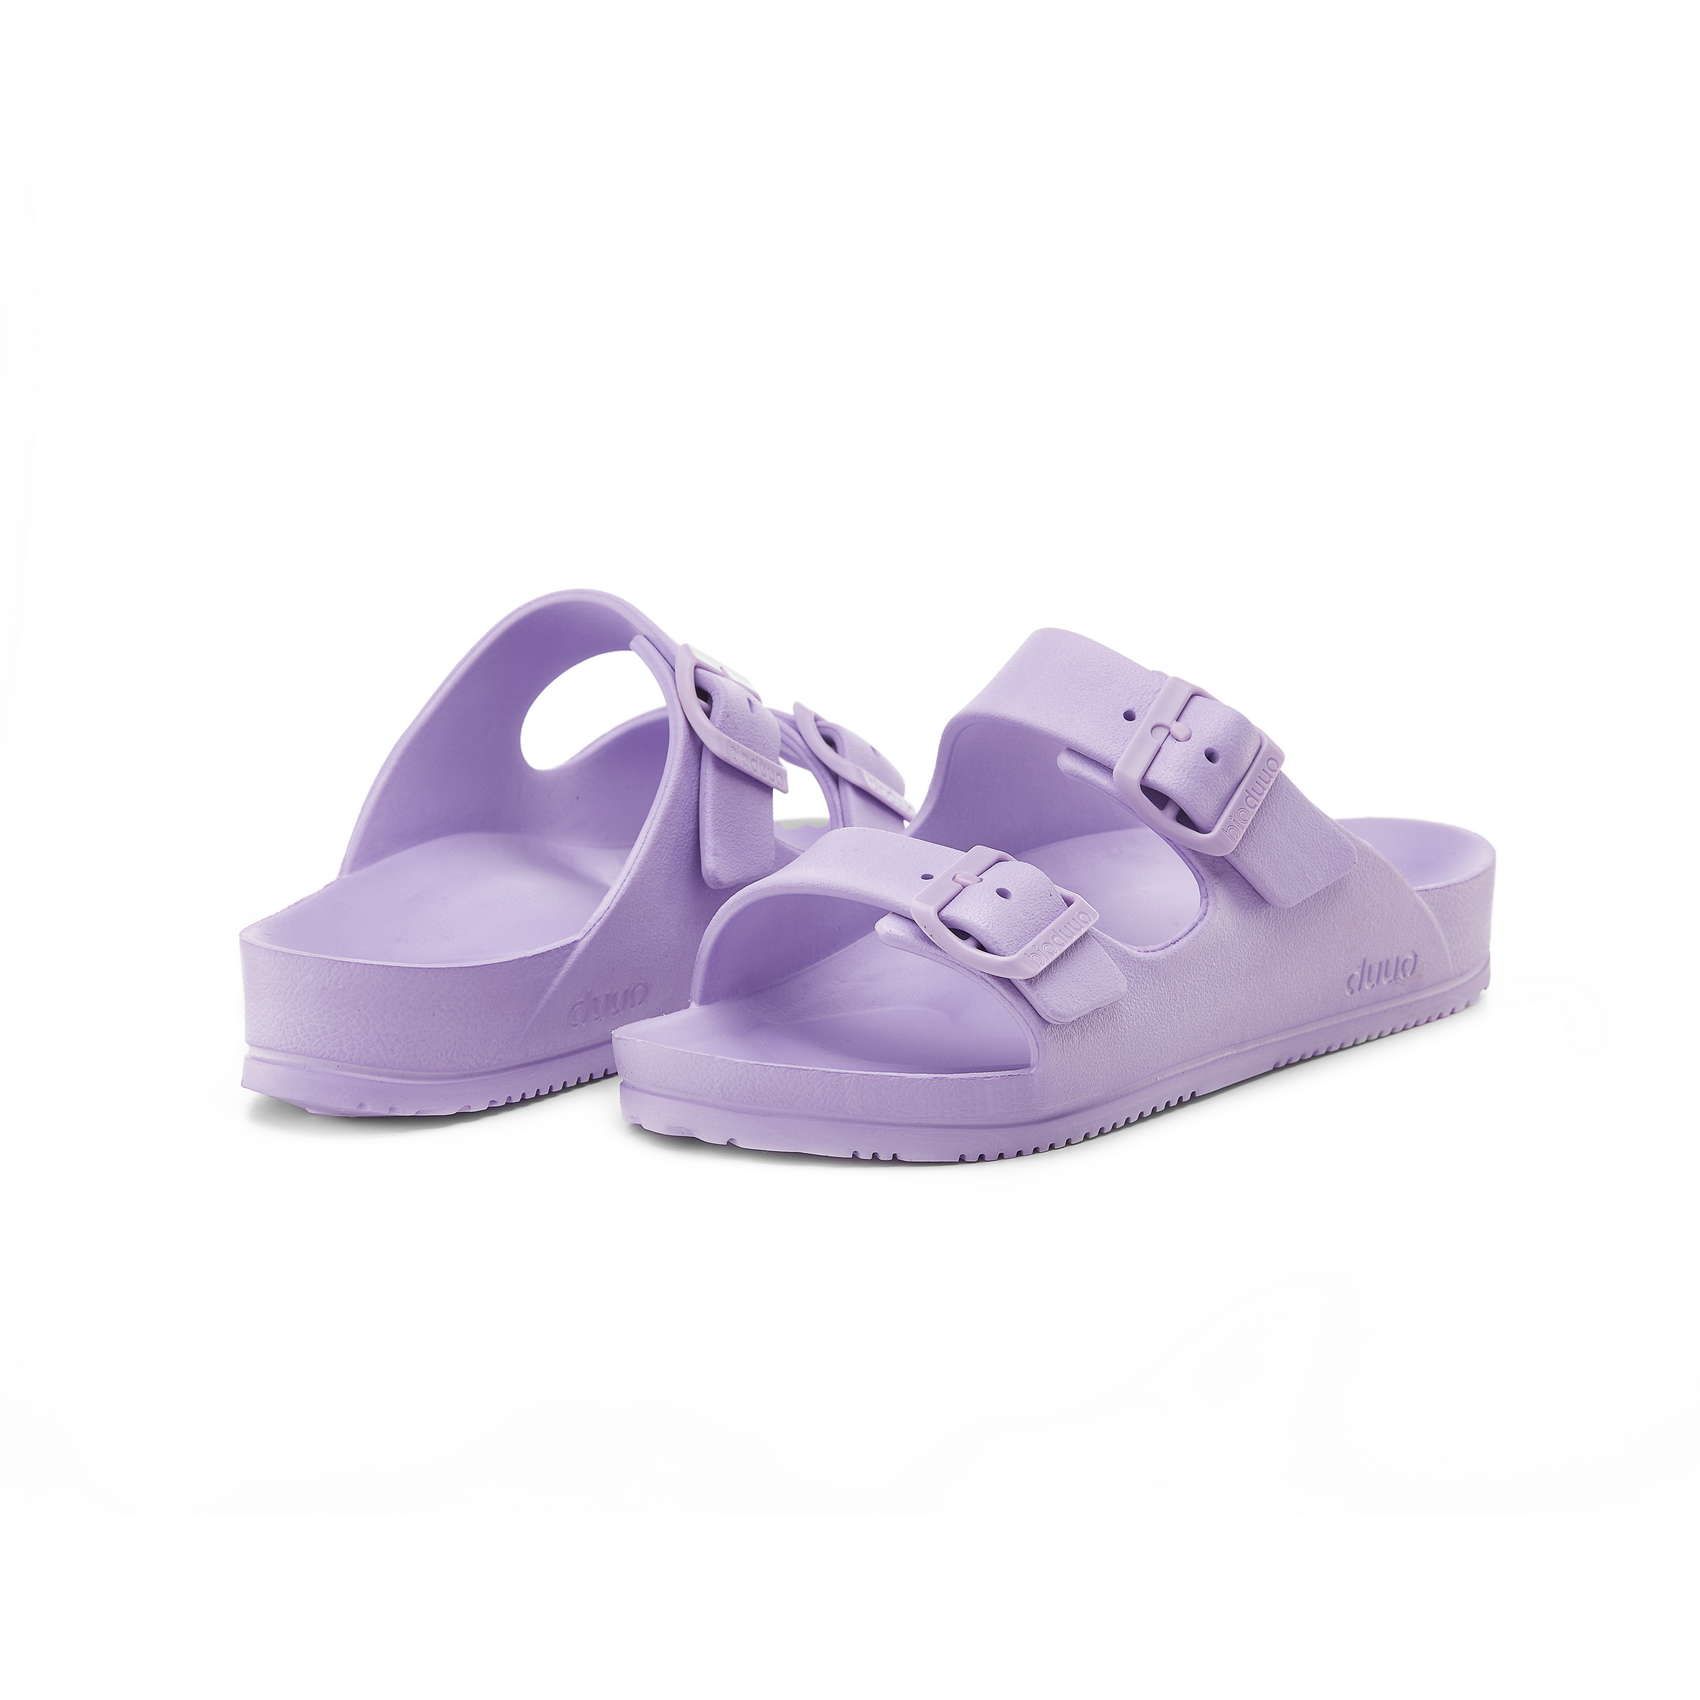 Flat sandal block color in violet